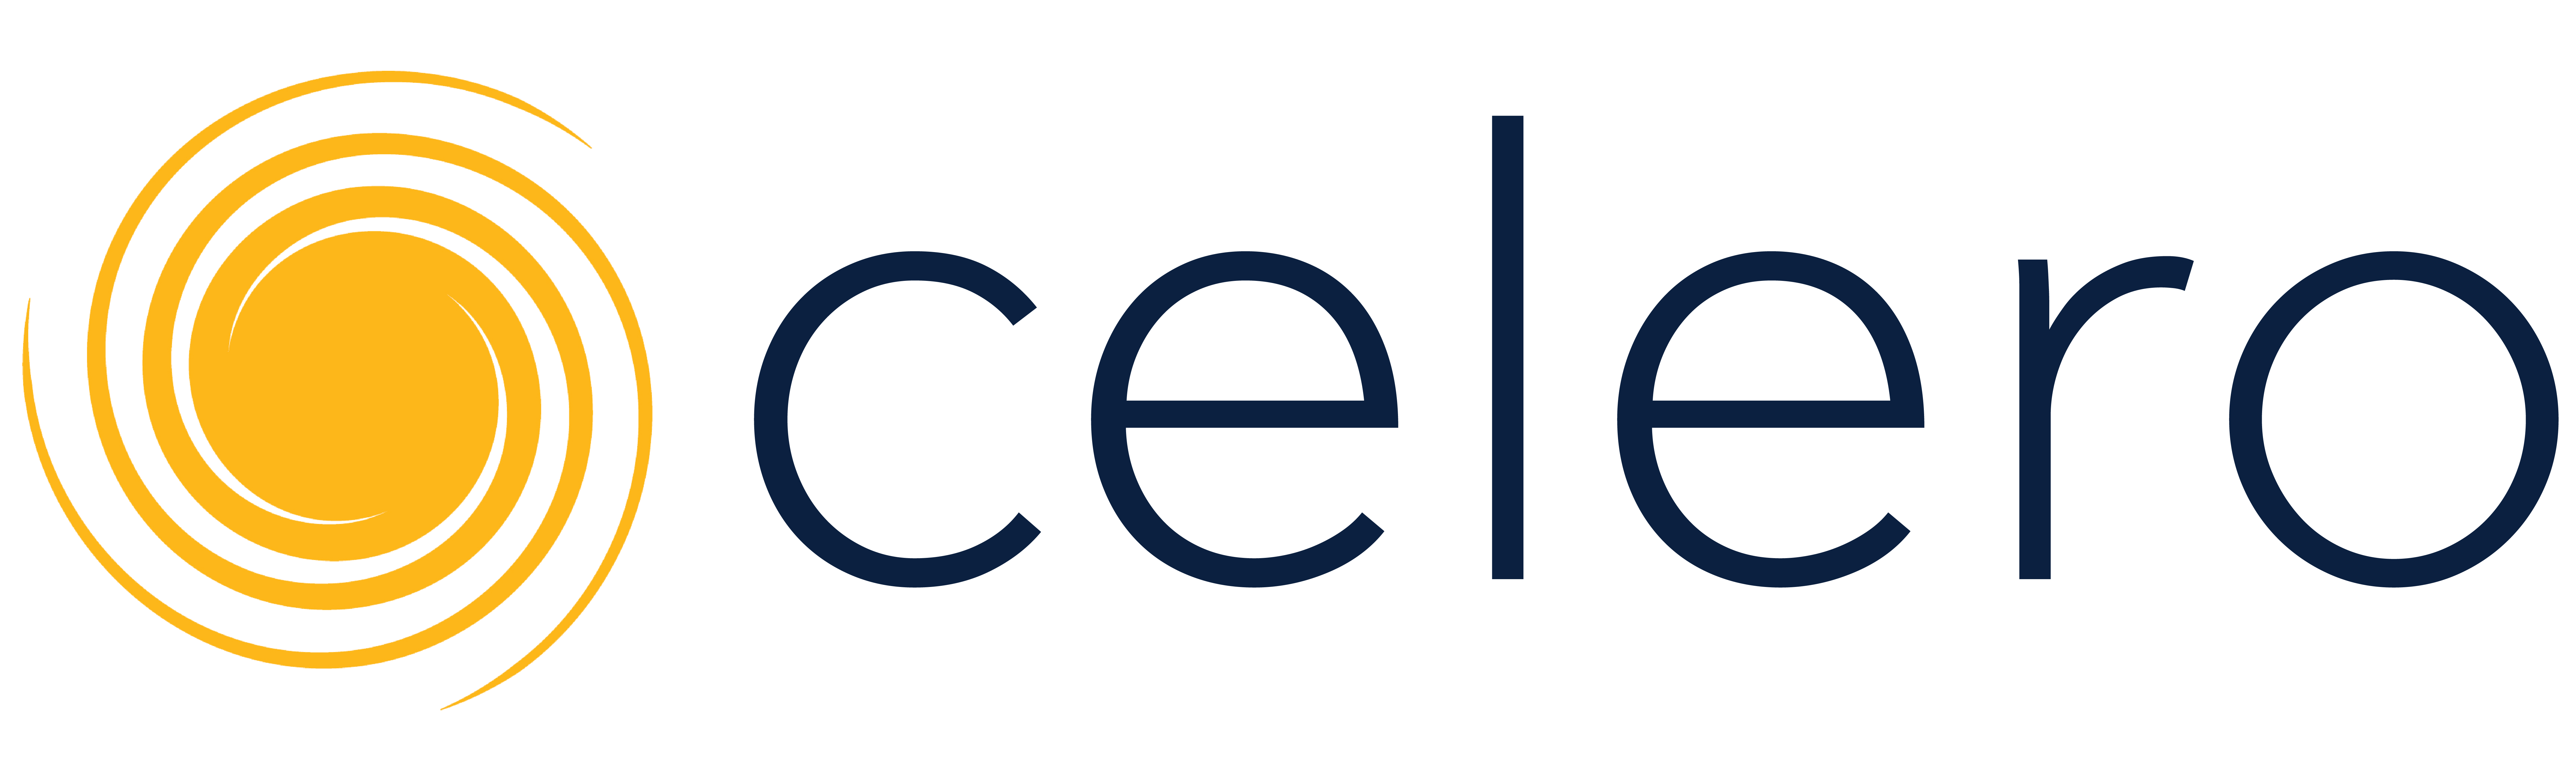 Celero_commerce_-_Alternate_Logo.png